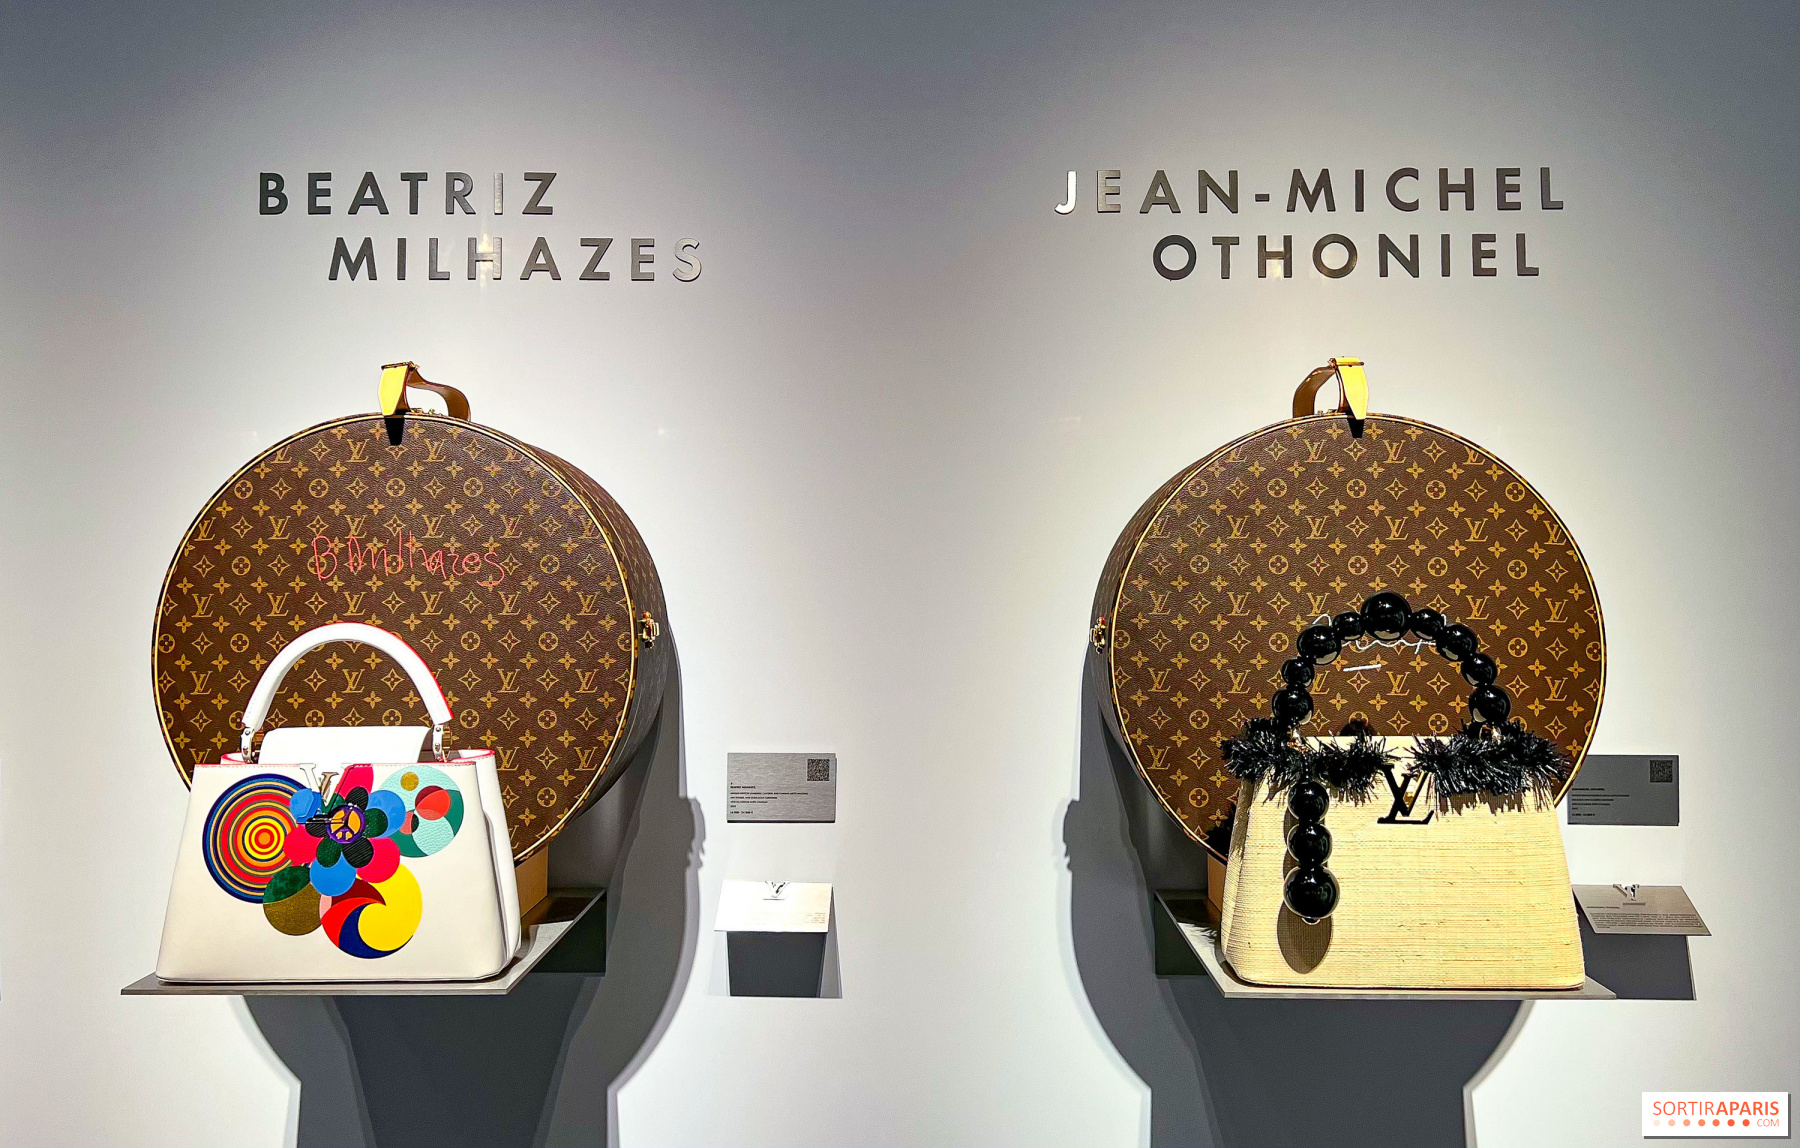 Louis Vuitton Opens Pop-up Exhibition, Café in Paris